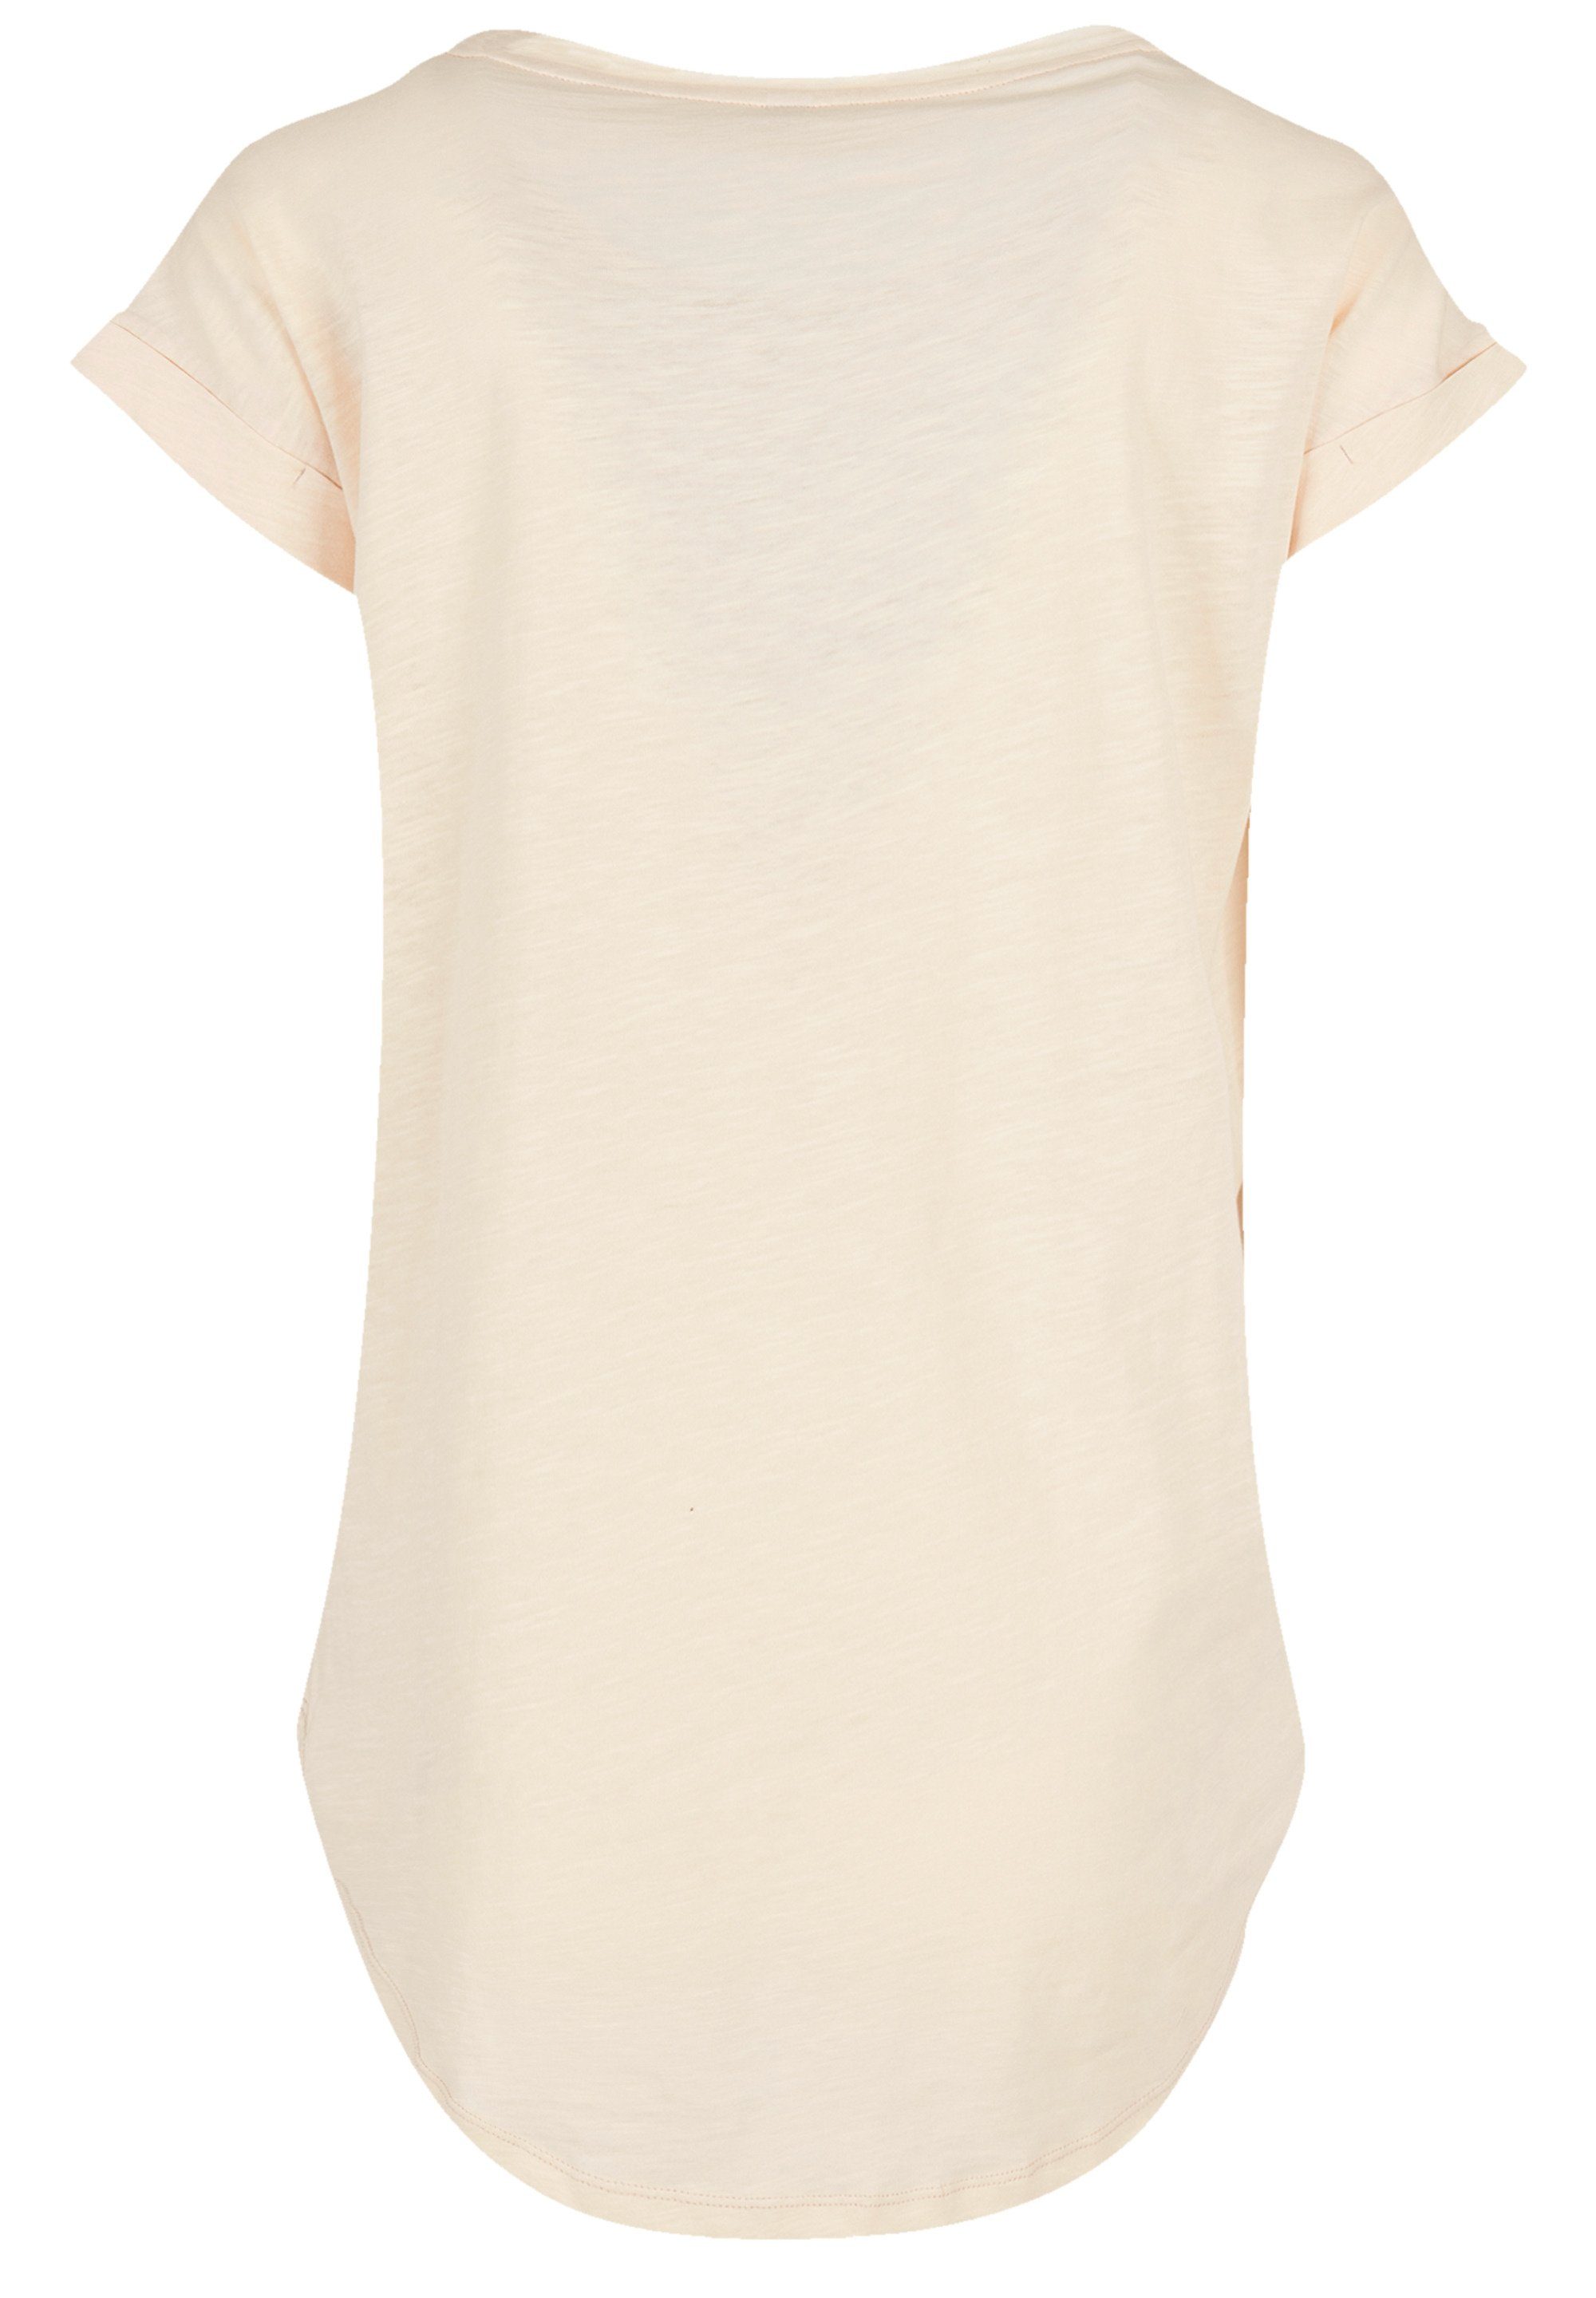 F4NT4STIC T-Shirt The Jam Band Classic Logo Premium Qualität, Hinten extra  lang geschnittenes Damen T-Shirt